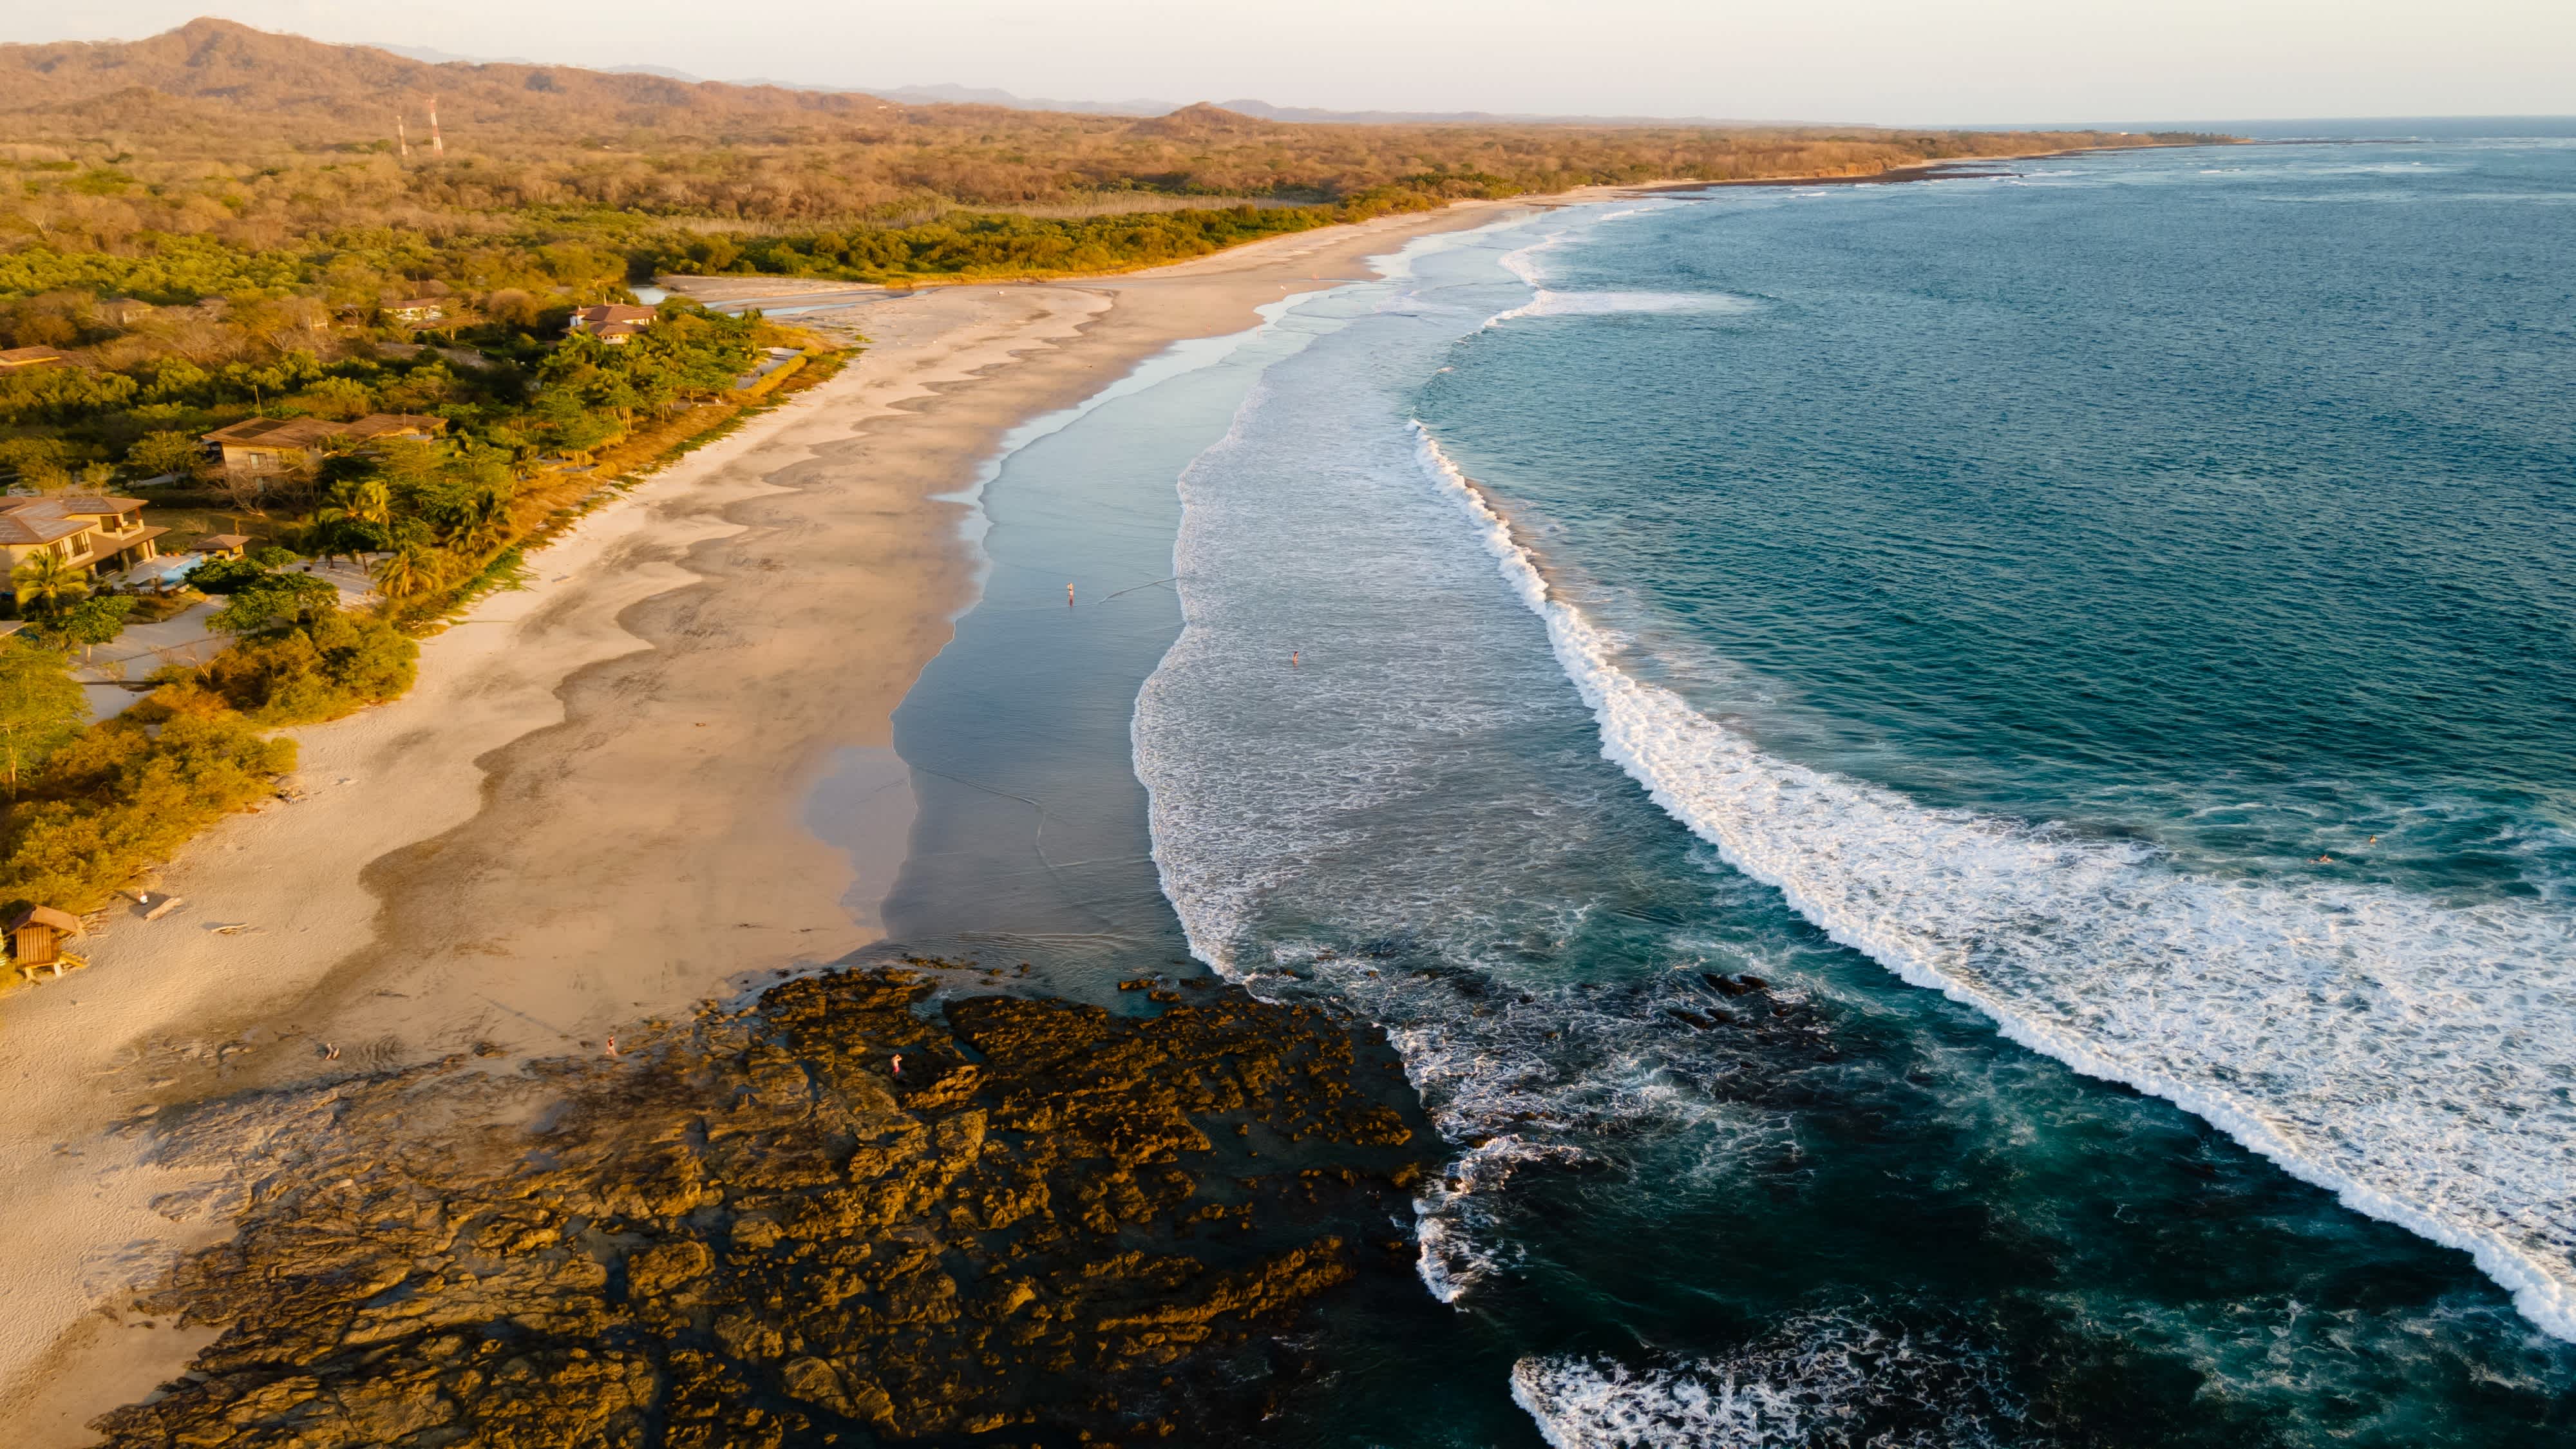 Blick aus der Luft auf den wunderschönen weitläufigen Strand von Avellanas in Guanacaste in Costa Rica mit welligem Meer und Felsen am Rand des Strandes. 
